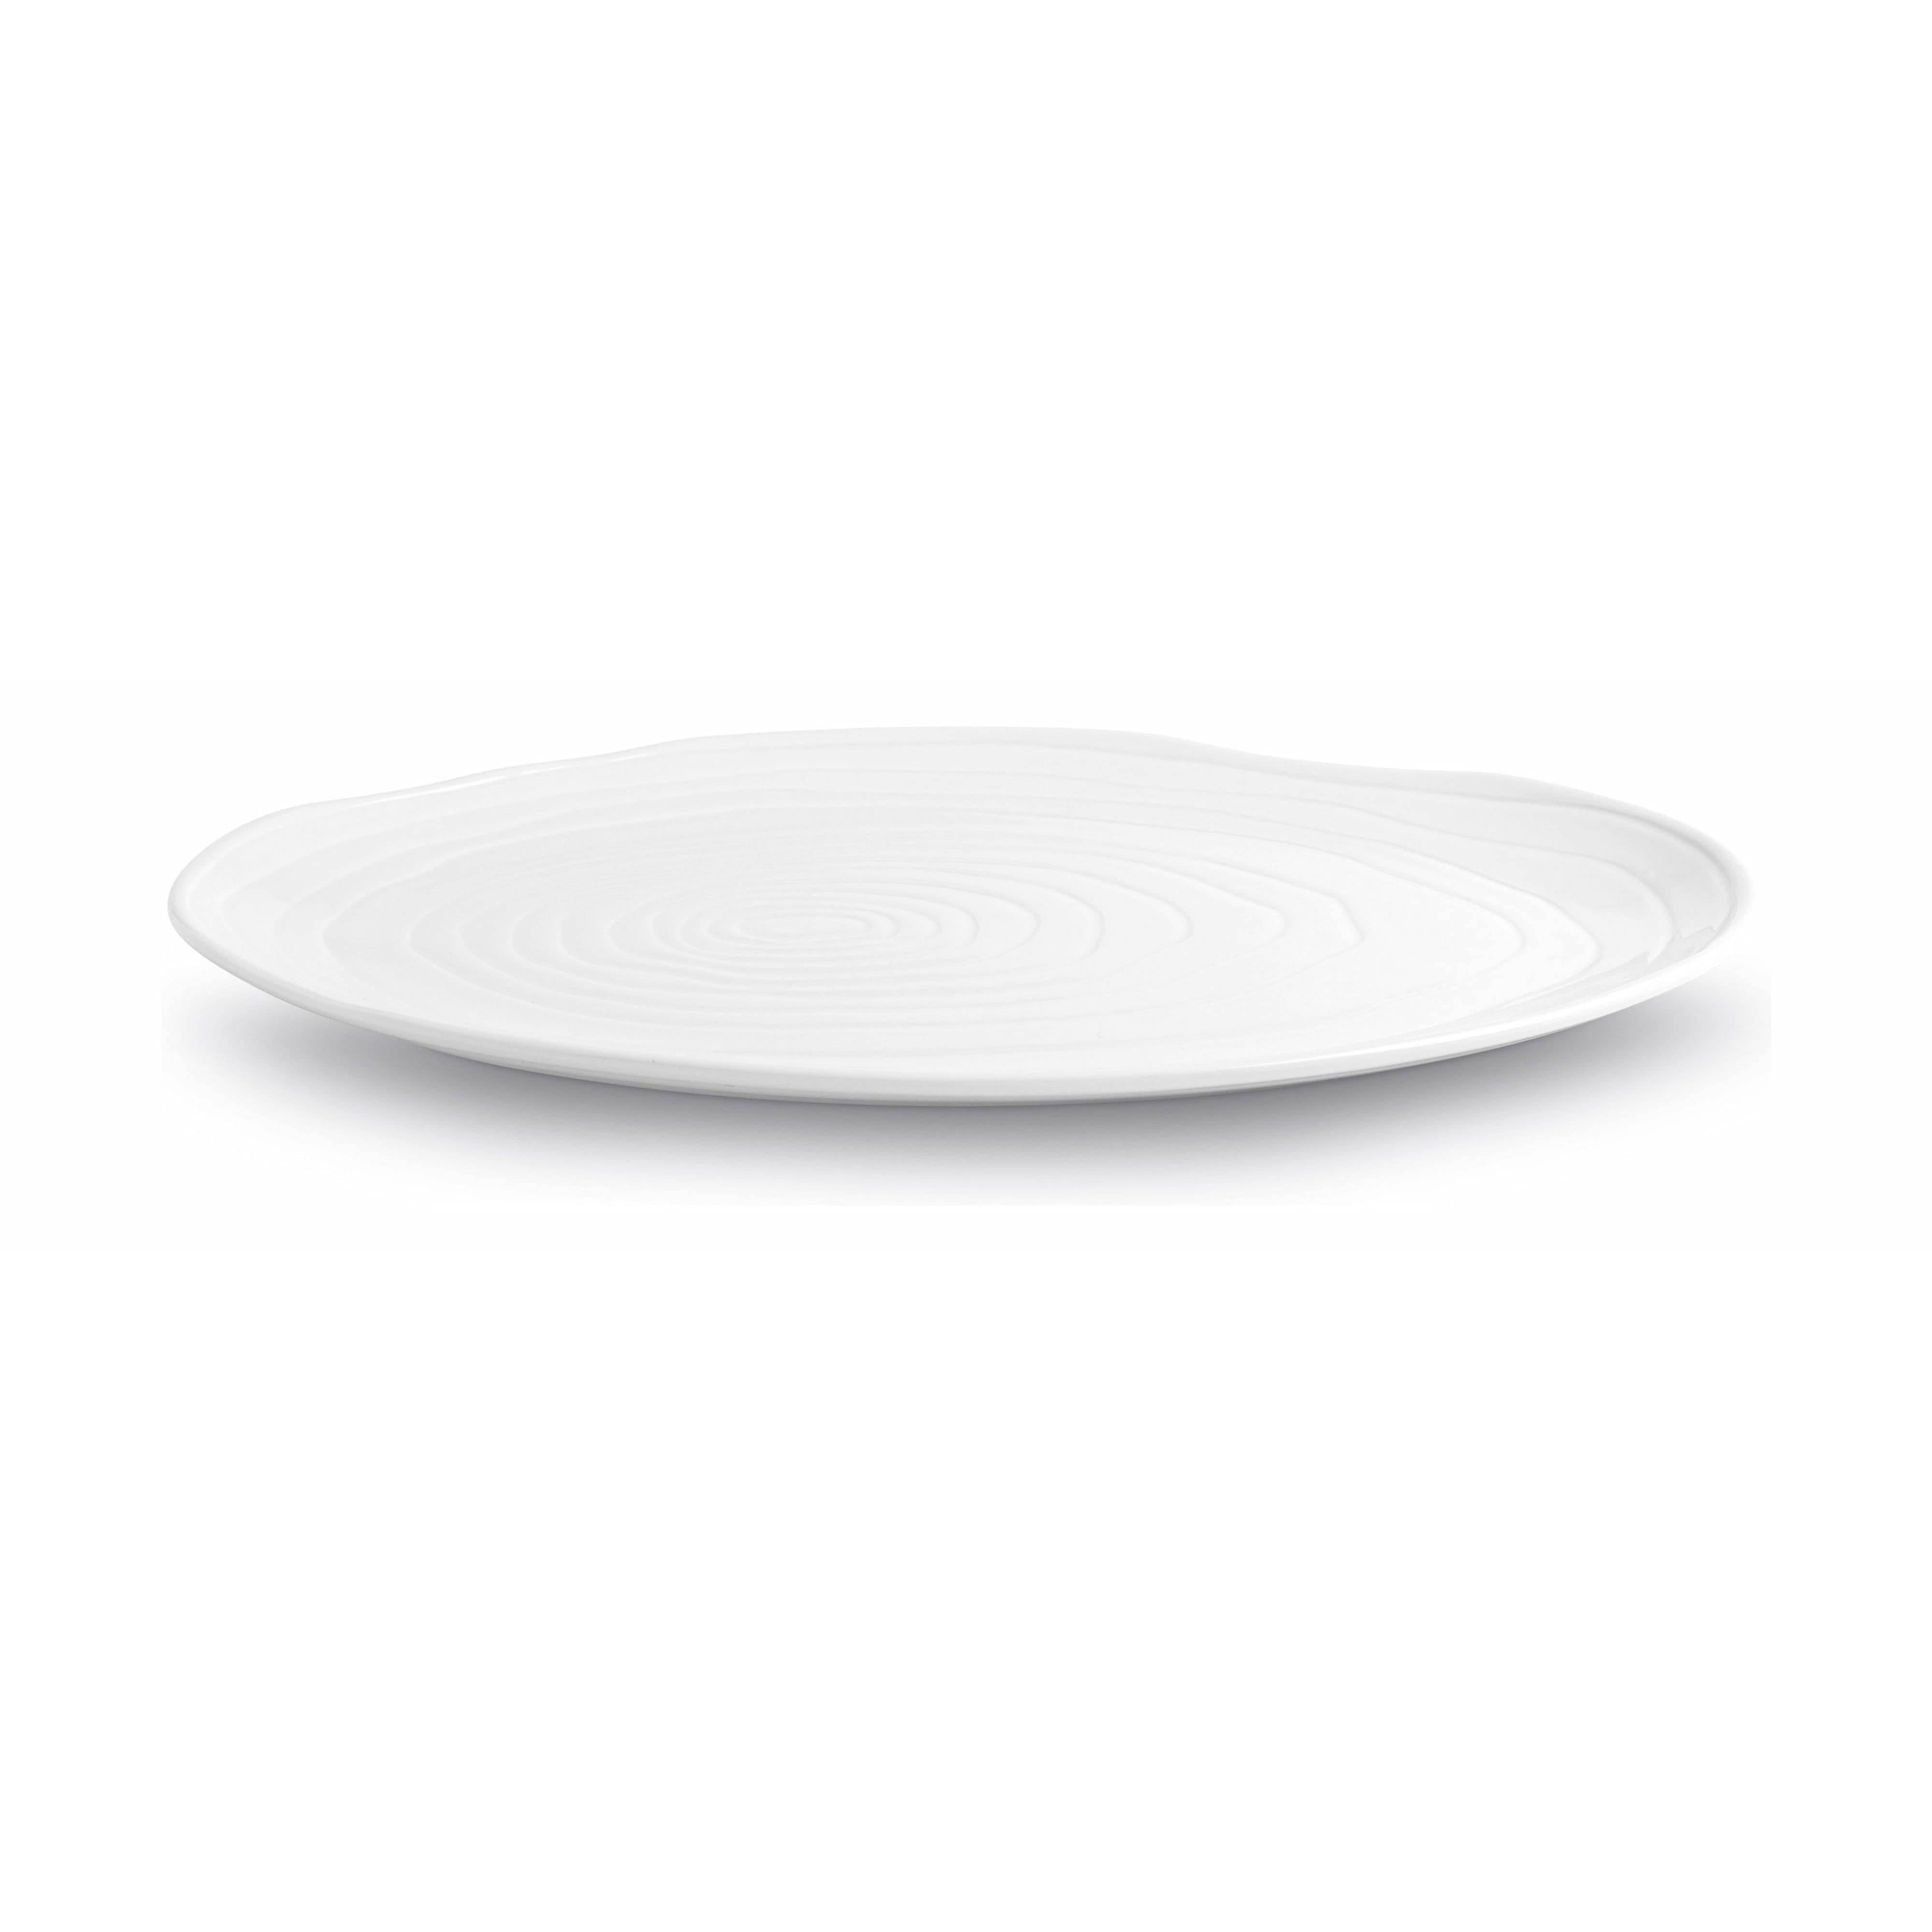 Pillivuyt Boulogne Plate ovale L 34 cm, blanc